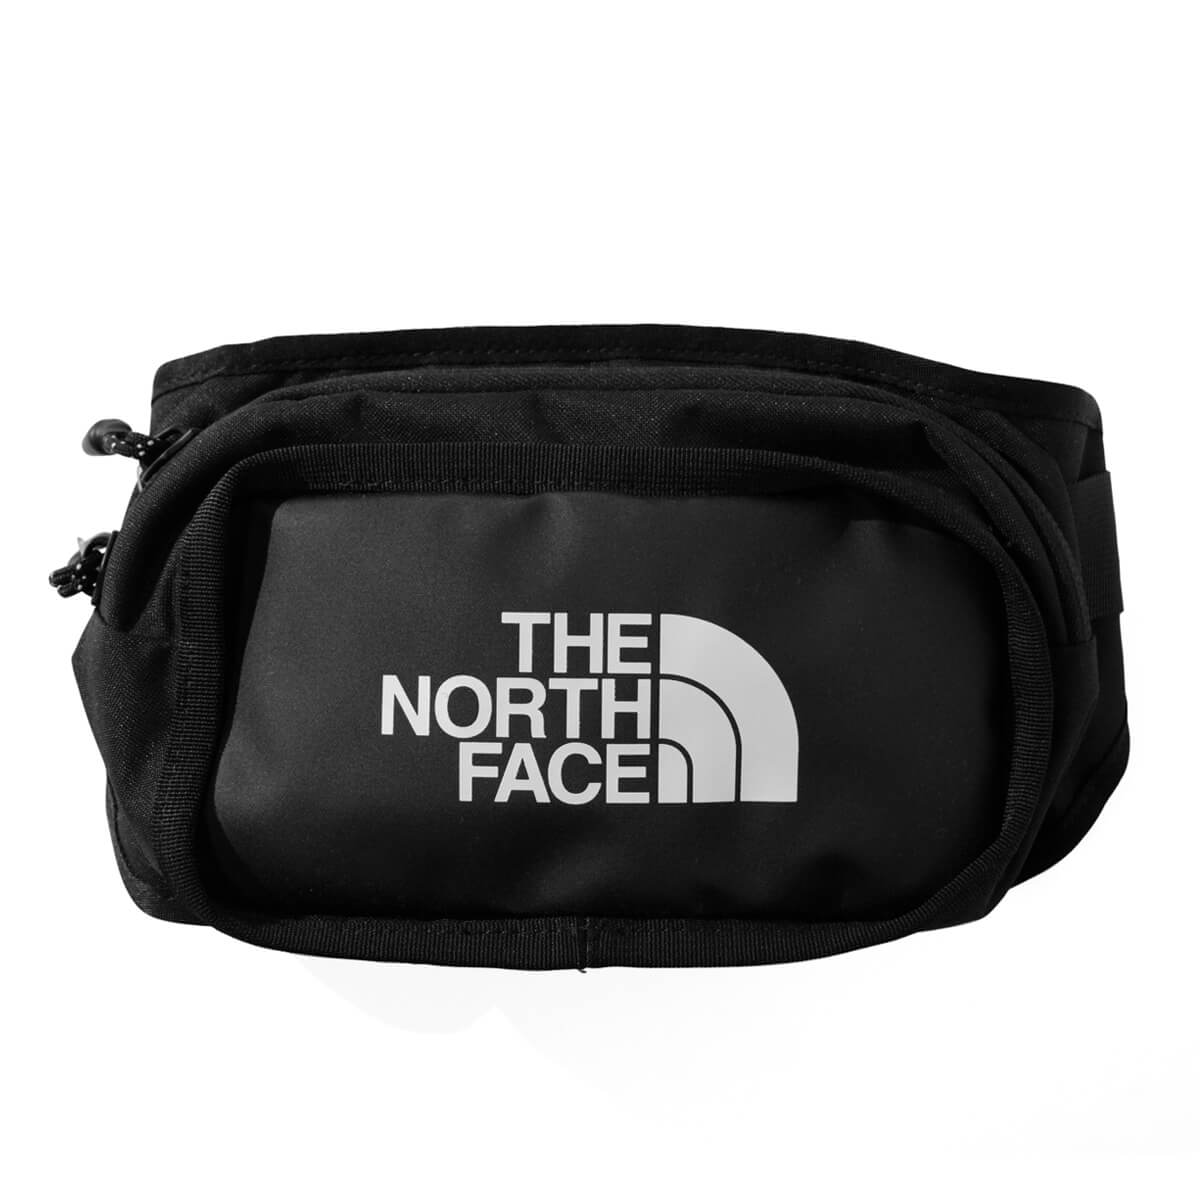 ノースフェイス スポーツ バッグ The North Face ザ ノース フェイス ウエストバッグ メンズ ストリート スポーツ カジュアル ブランド EXPLORE HIP PACK BLACK ブラック 黒色 NF0A3KZX ★★